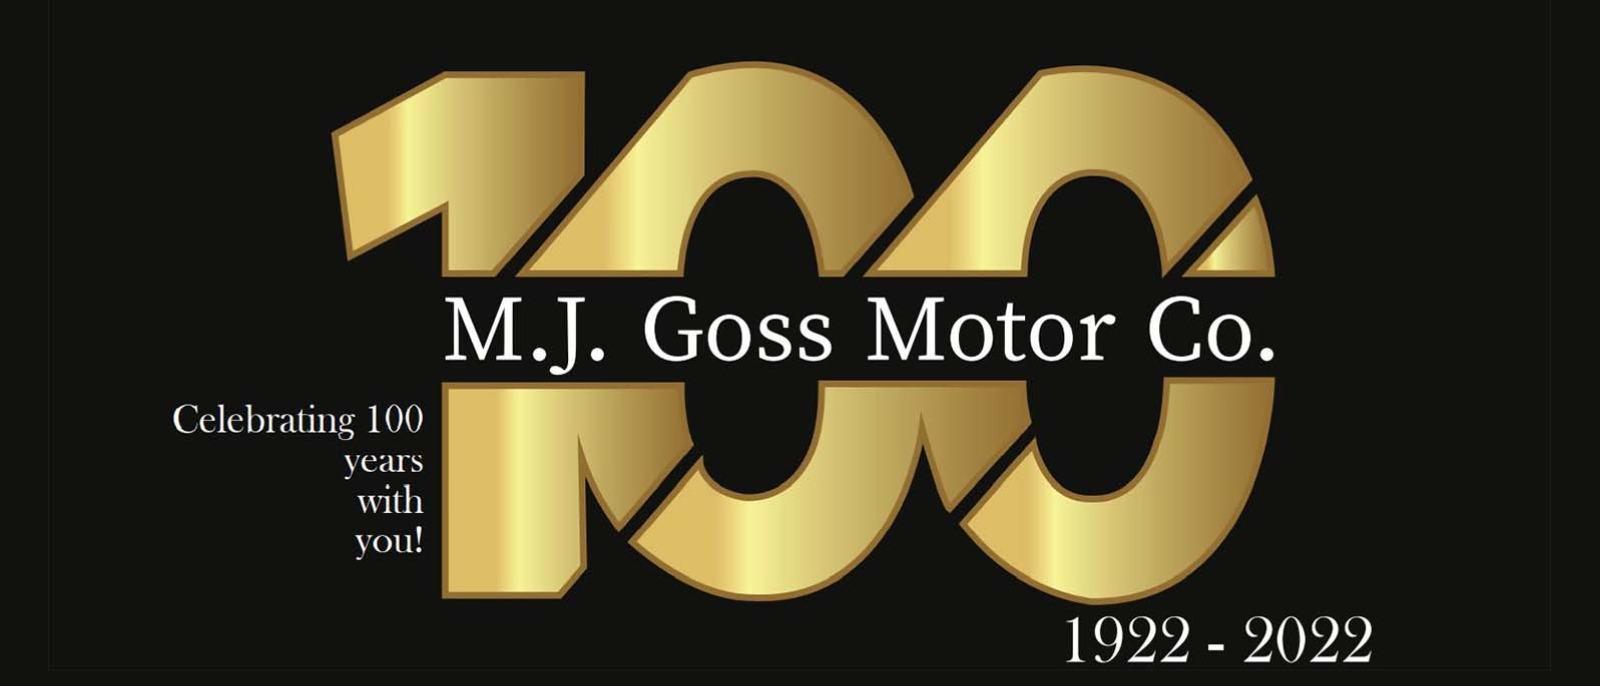 M.J. Gross Motor Co.